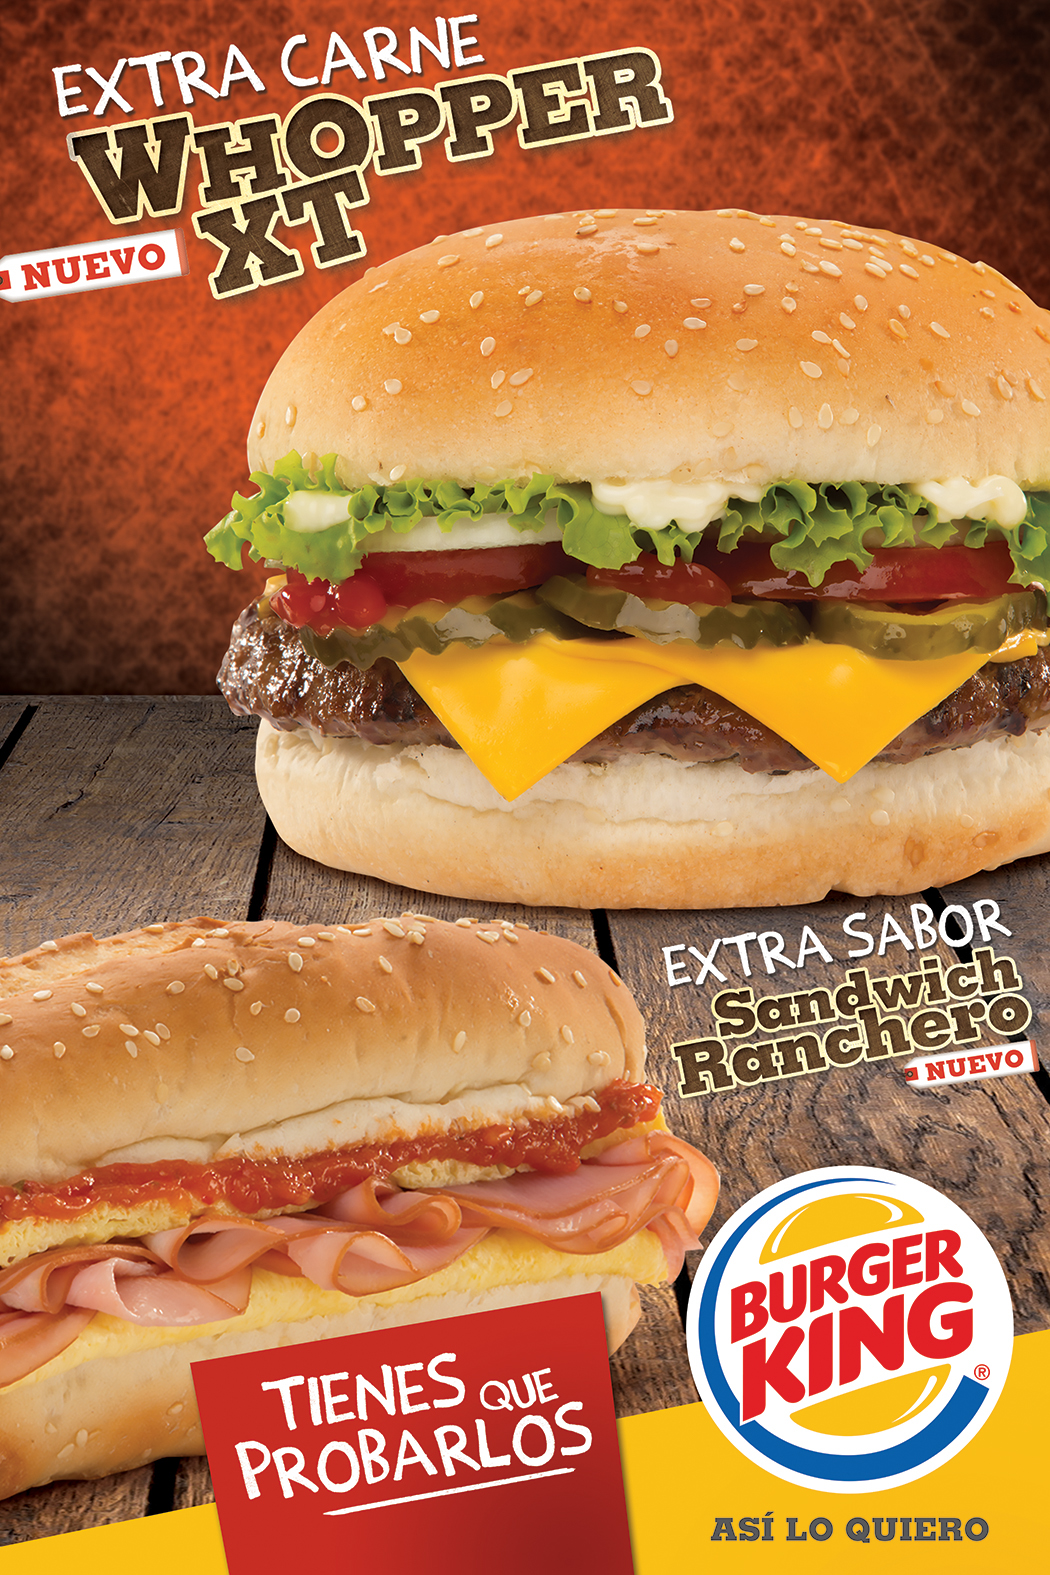 Burger King whopper Guatemala xlediaz fs comunicación